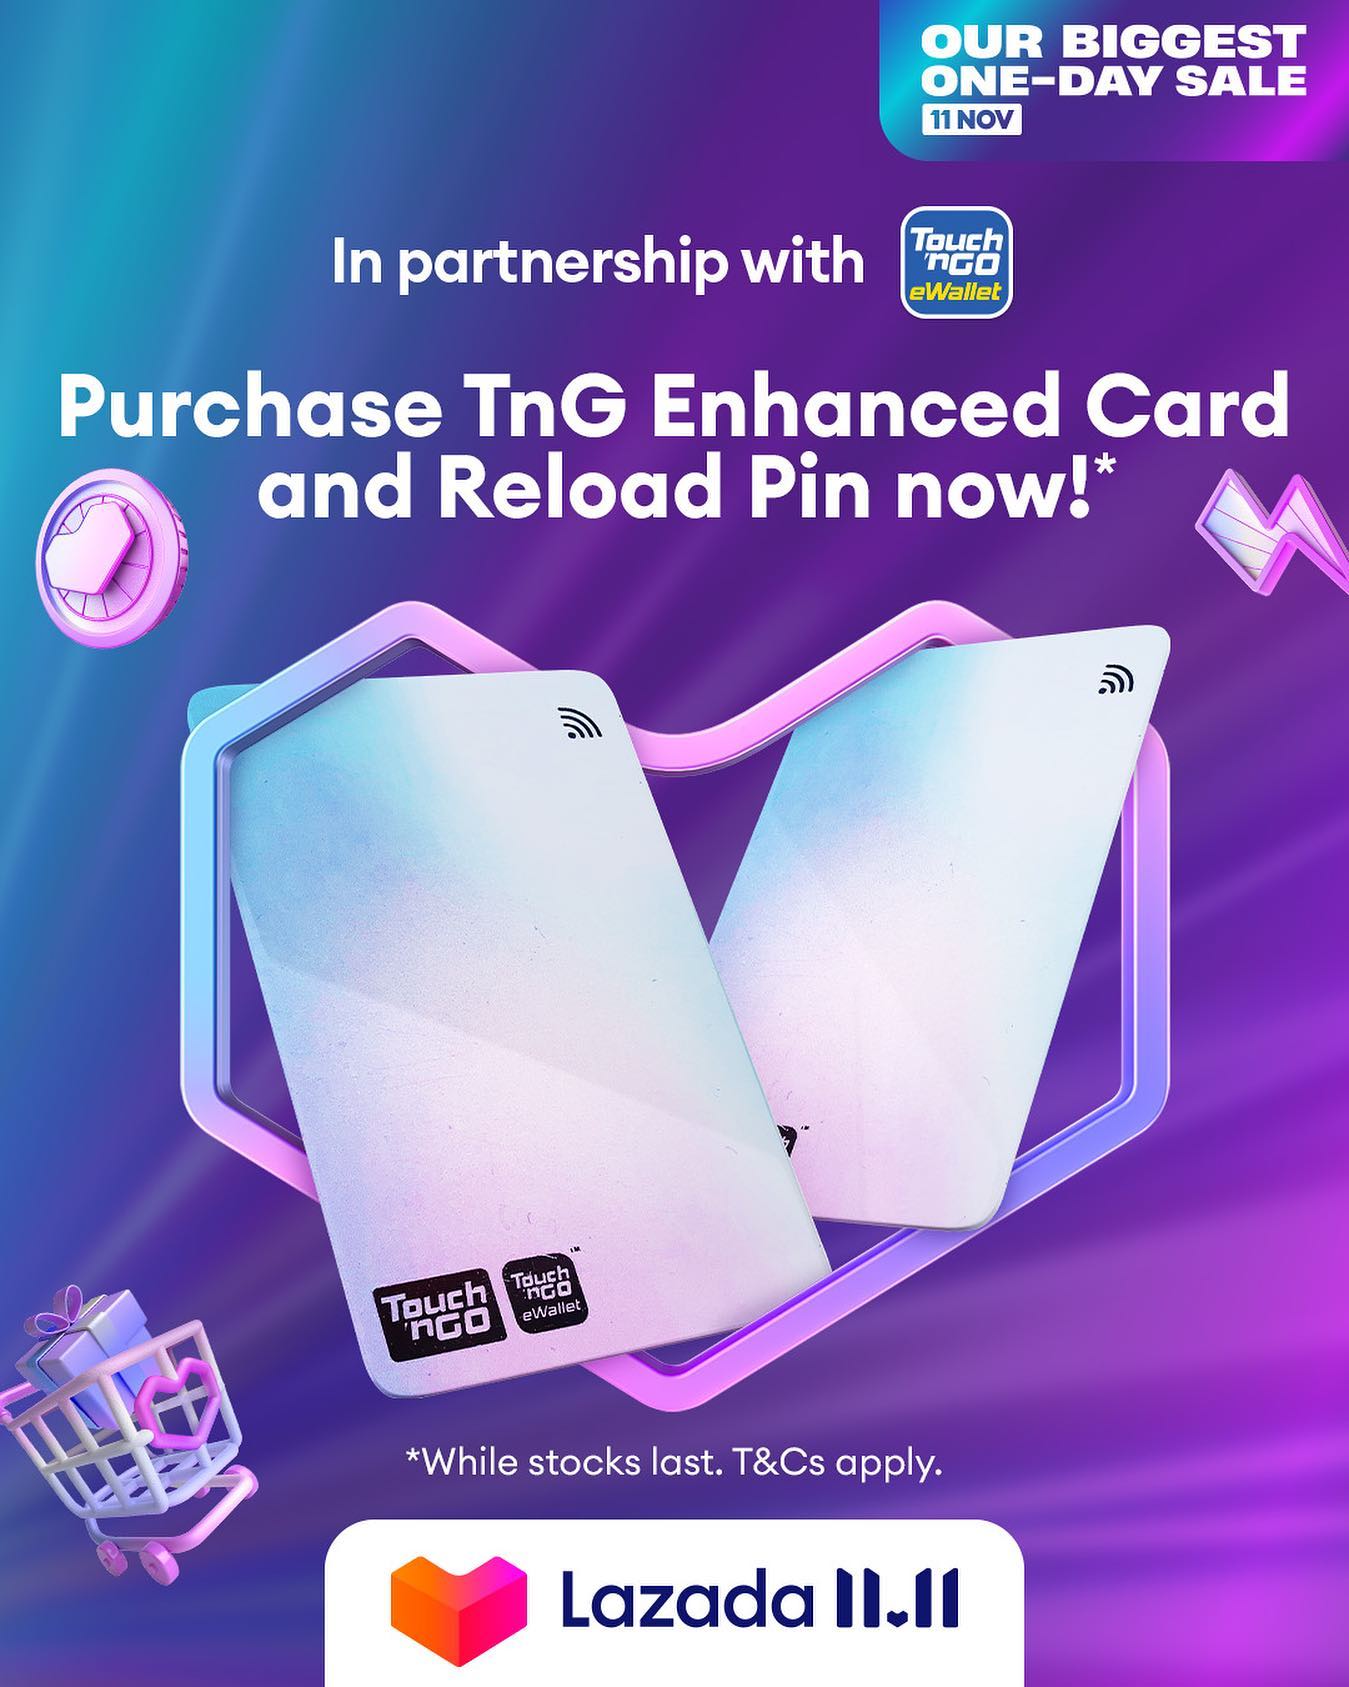 TNG NFC Card on Lazada 11.11